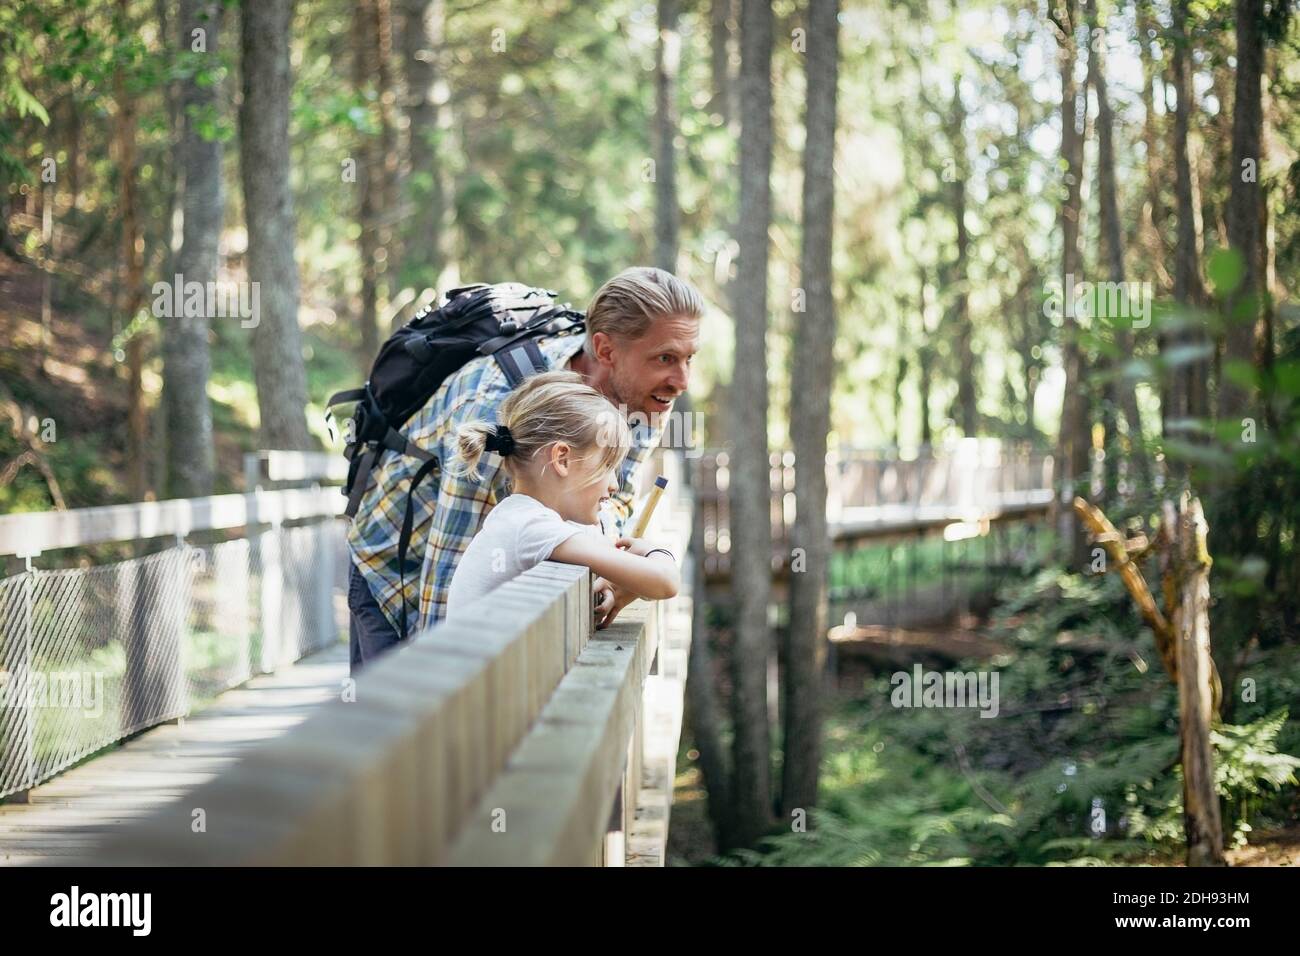 Lächelnder Vater mit Rucksack, der mit der Tochter auf dem Steg spricht Wald Stockfoto